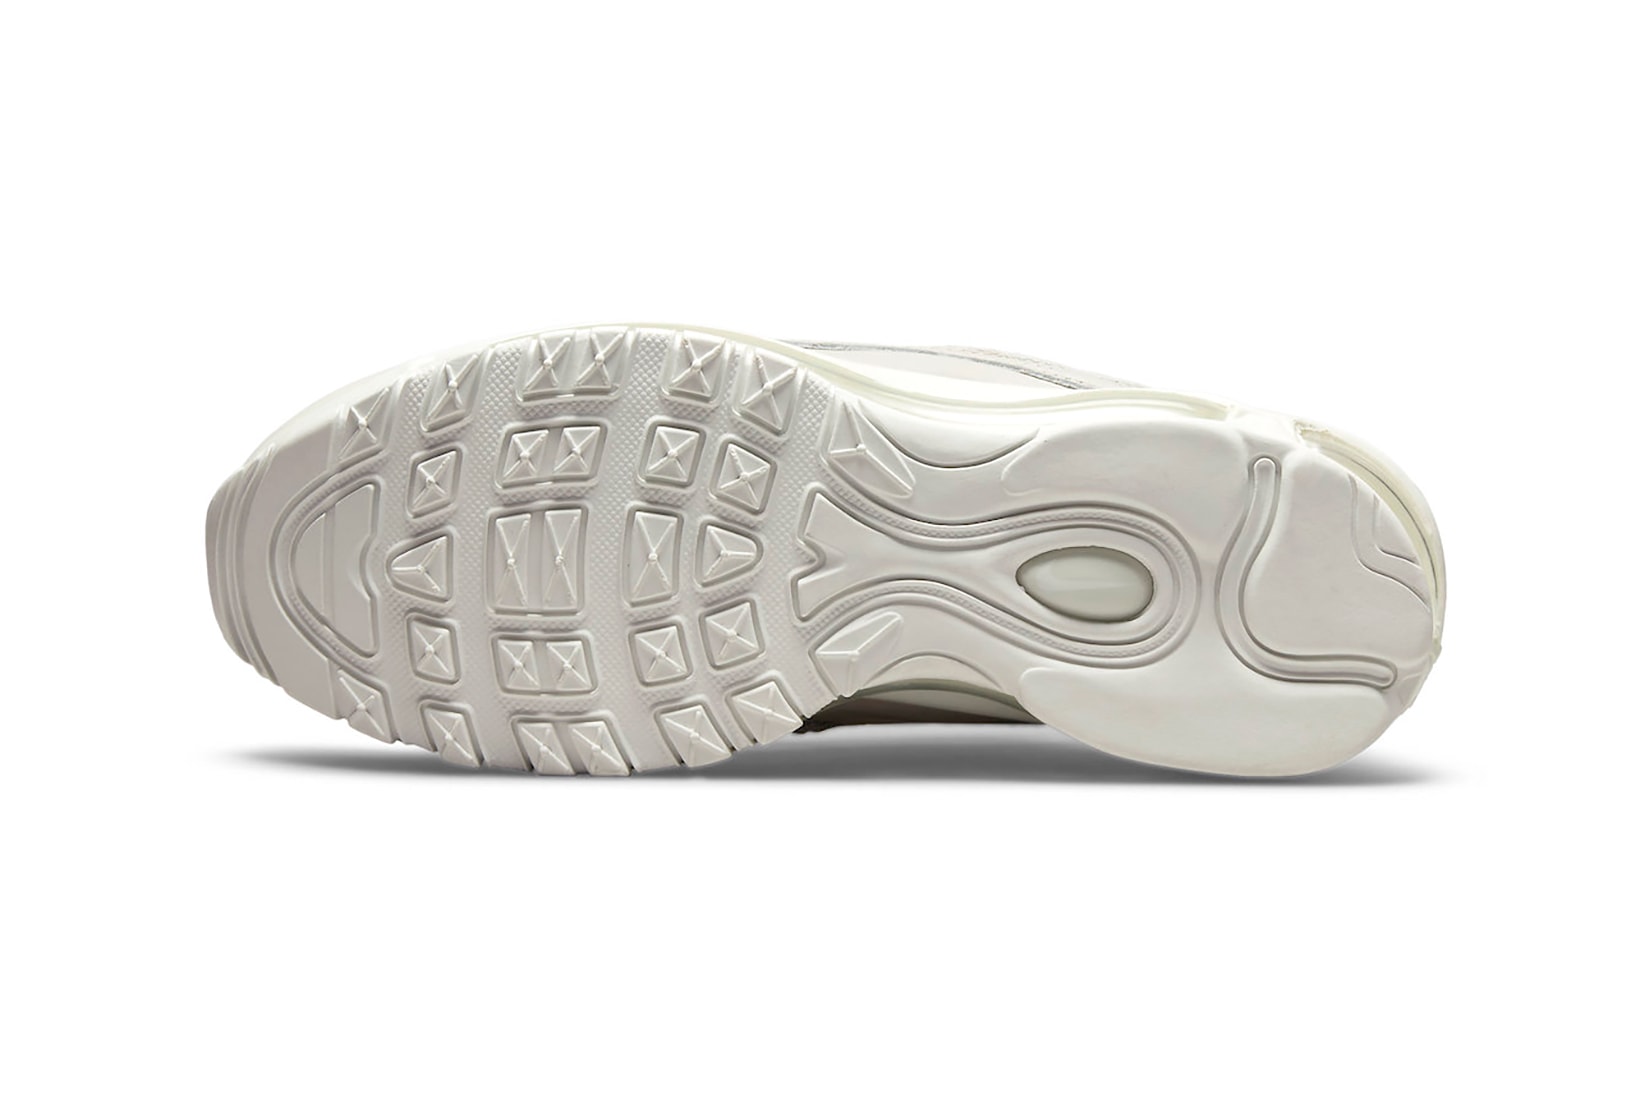 Nike Air Max 97 White Tan Beige Womens Sneakers Kicks Footwear Shoes